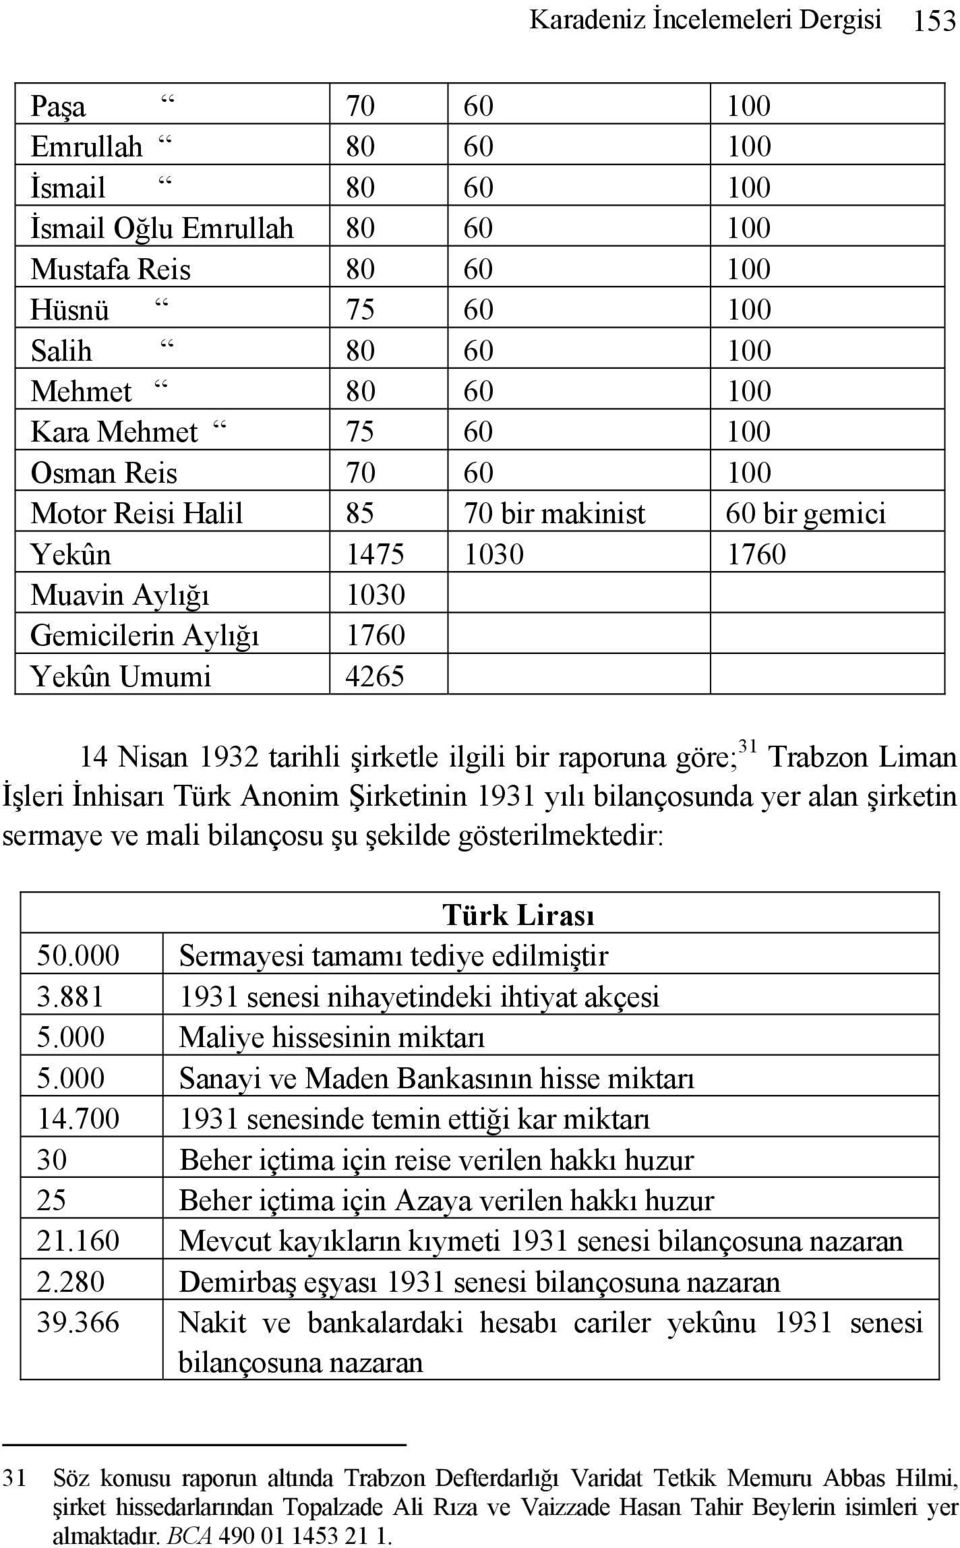 şirketle ilgili bir raporuna göre; 31 Trabzon Liman İşleri İnhisarı Türk Anonim Şirketinin 1931 yılı bilançosunda yer alan şirketin sermaye ve mali bilançosu şu şekilde gösterilmektedir: Türk Lirası